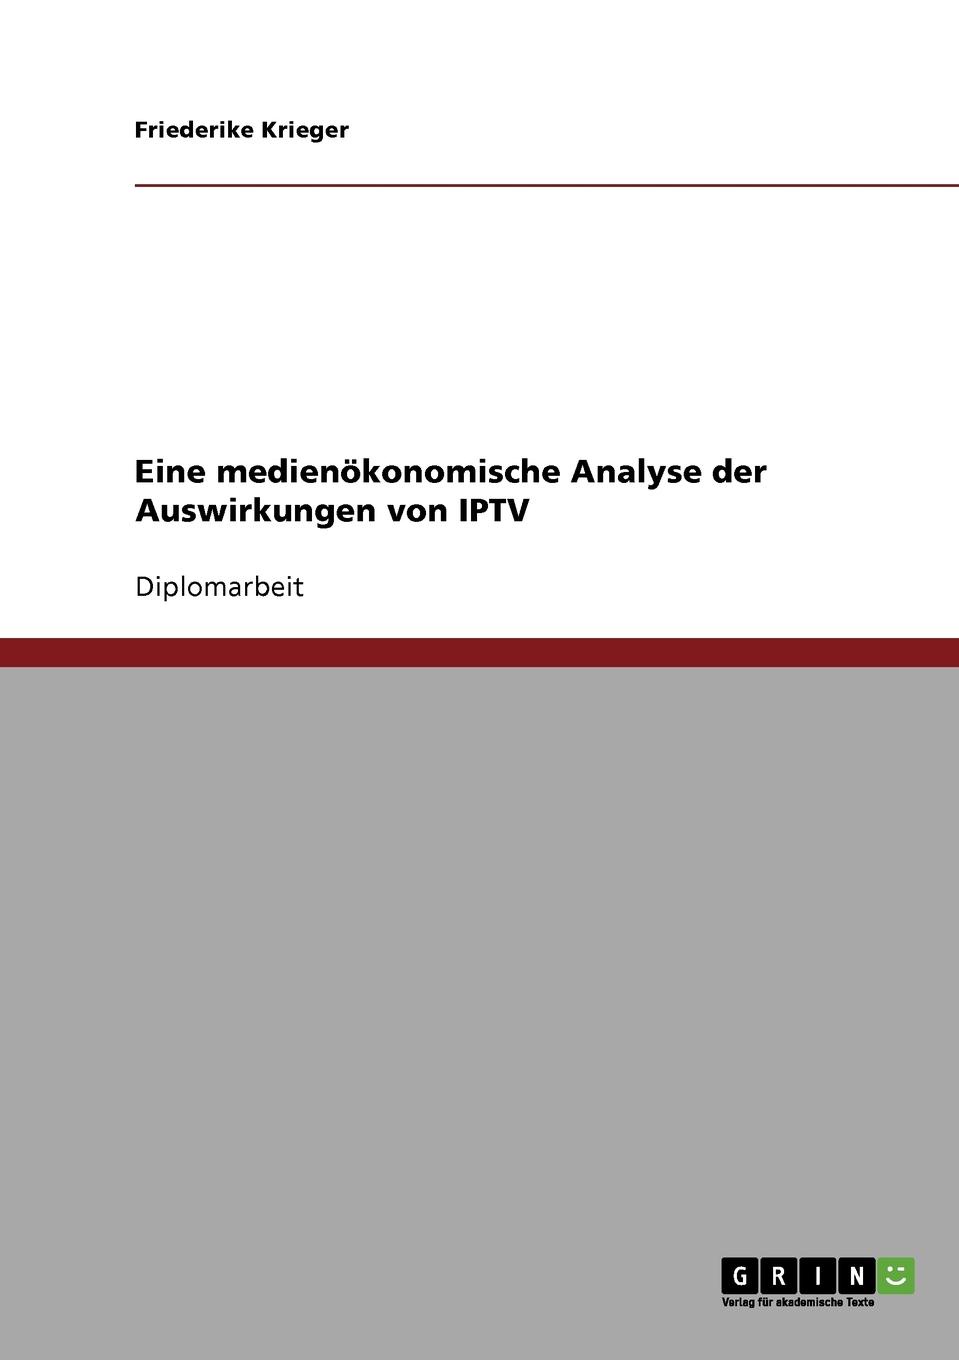 Eine medienokonomische Analyse der Auswirkungen von IPTV